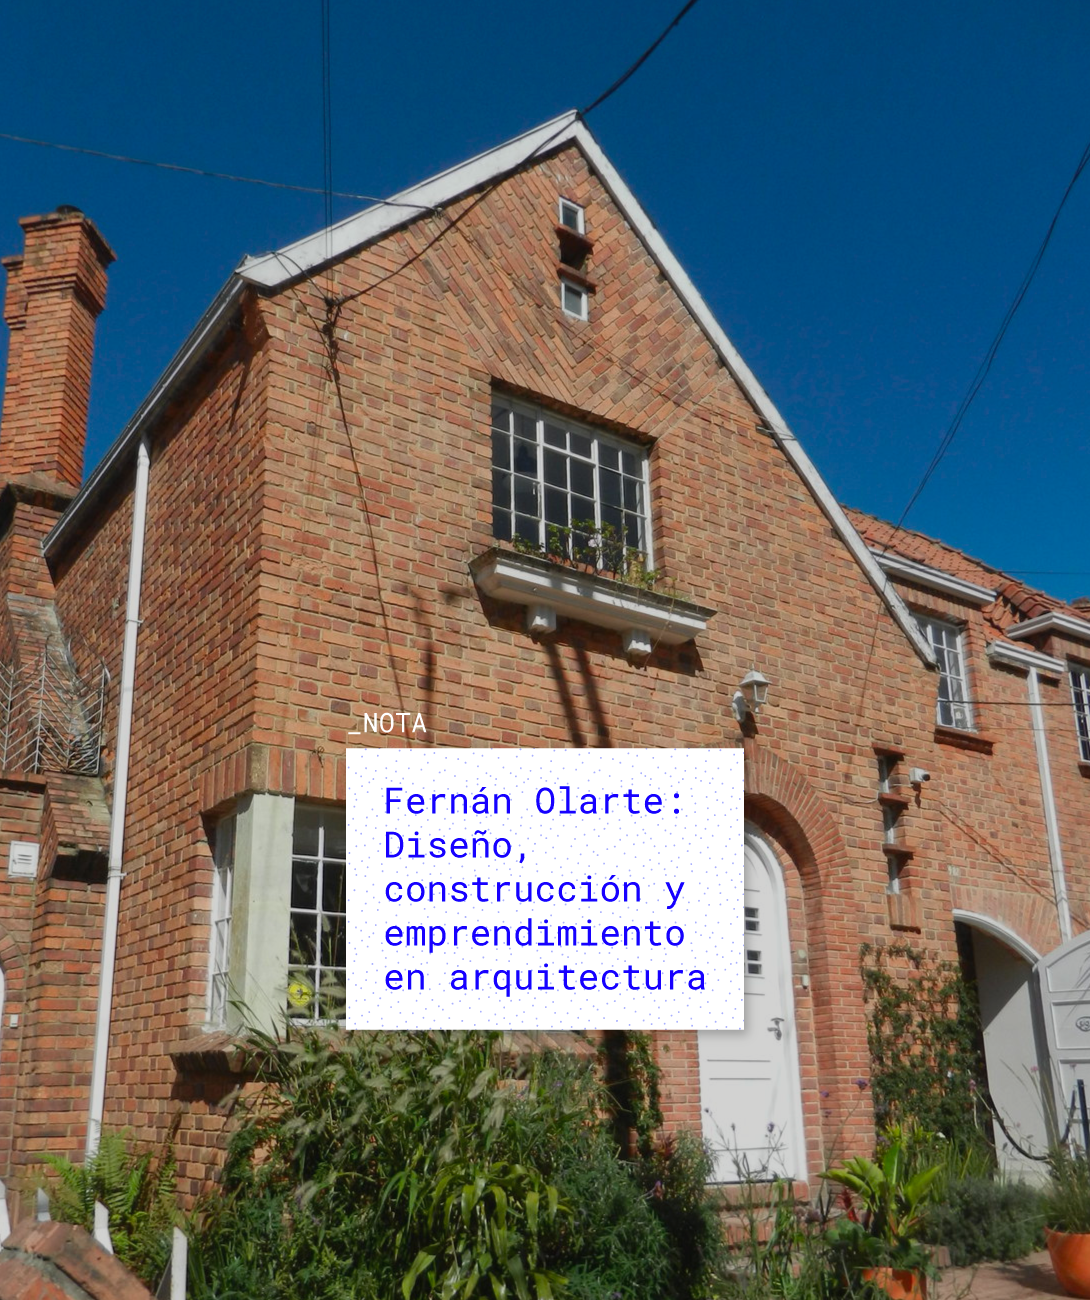 Fernán Olarte: Diseño, construcción y emprendimiento en arquitectura